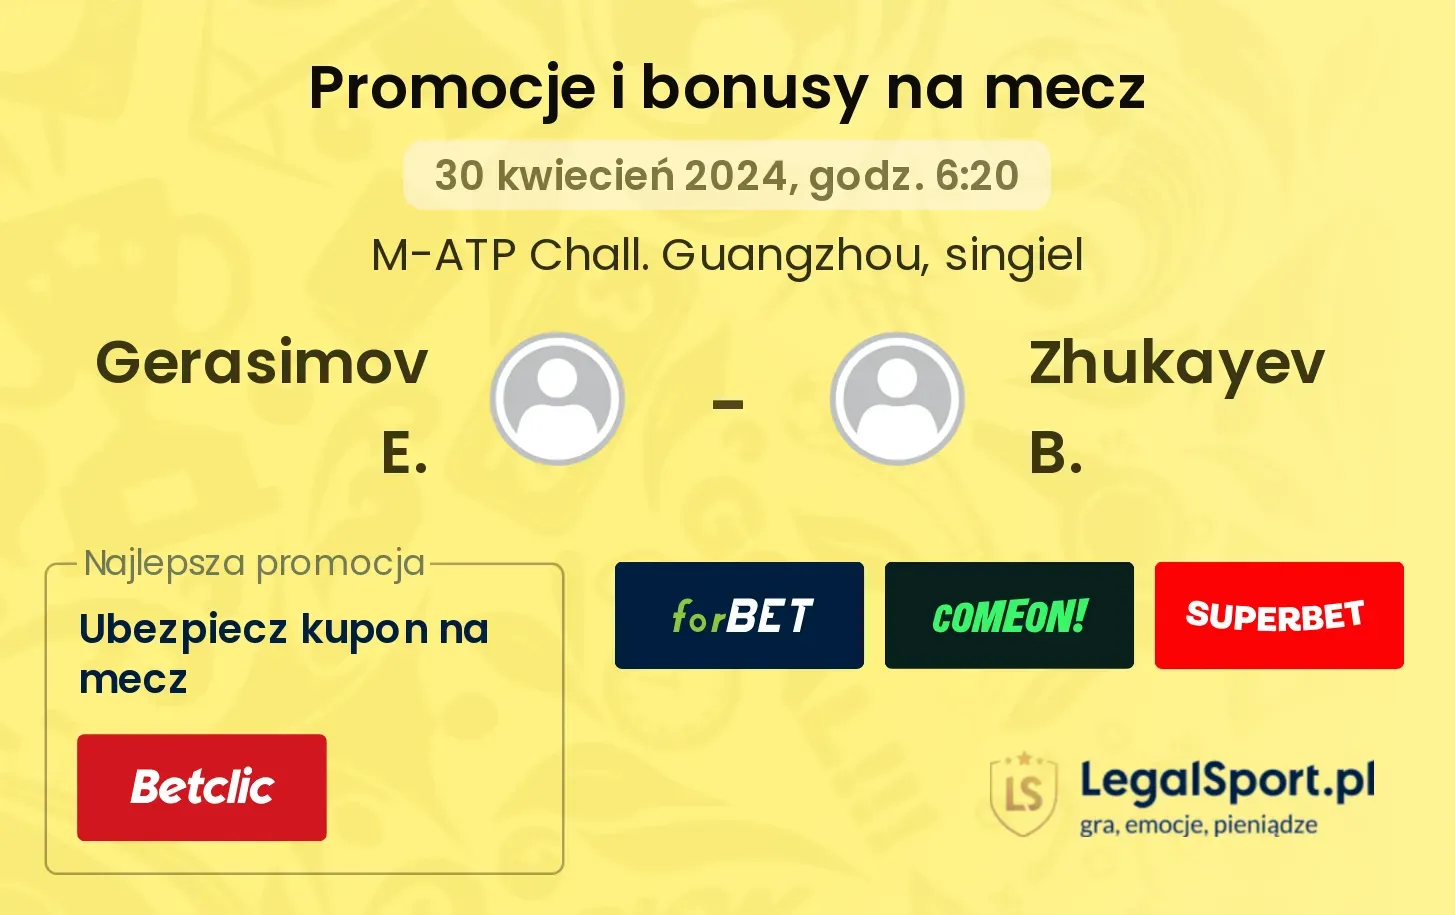 Gerasimov E. - Zhukayev B. promocje bonusy na mecz